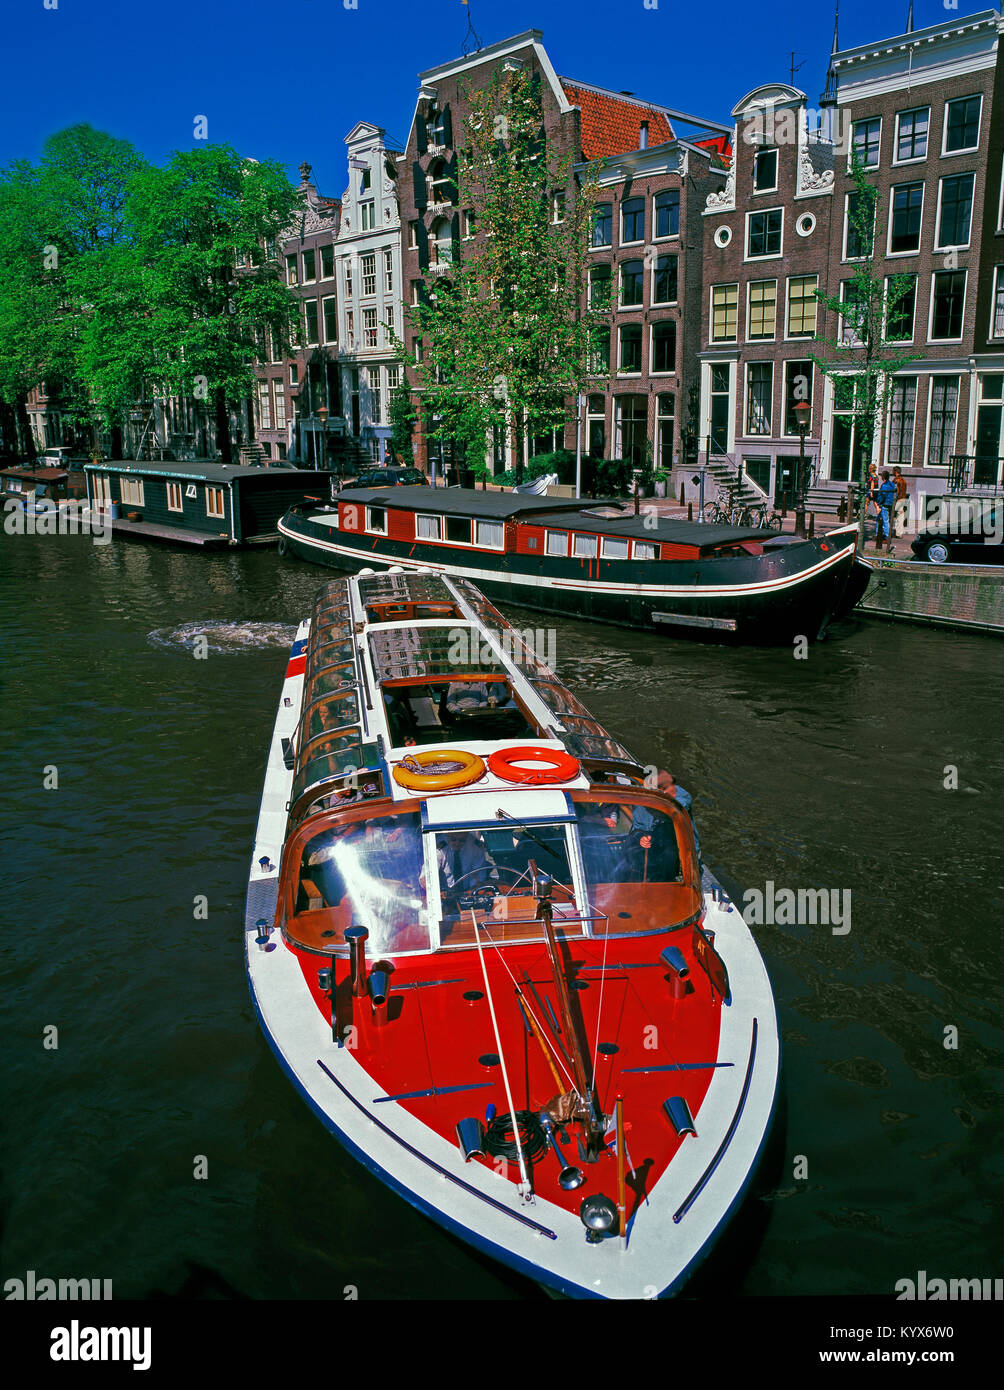 Vergnügen / Touristische Bootsfahrt auf der Brouwersgracht Kanal, Amsterdam, Noord Holland, Niederlande Stockfoto